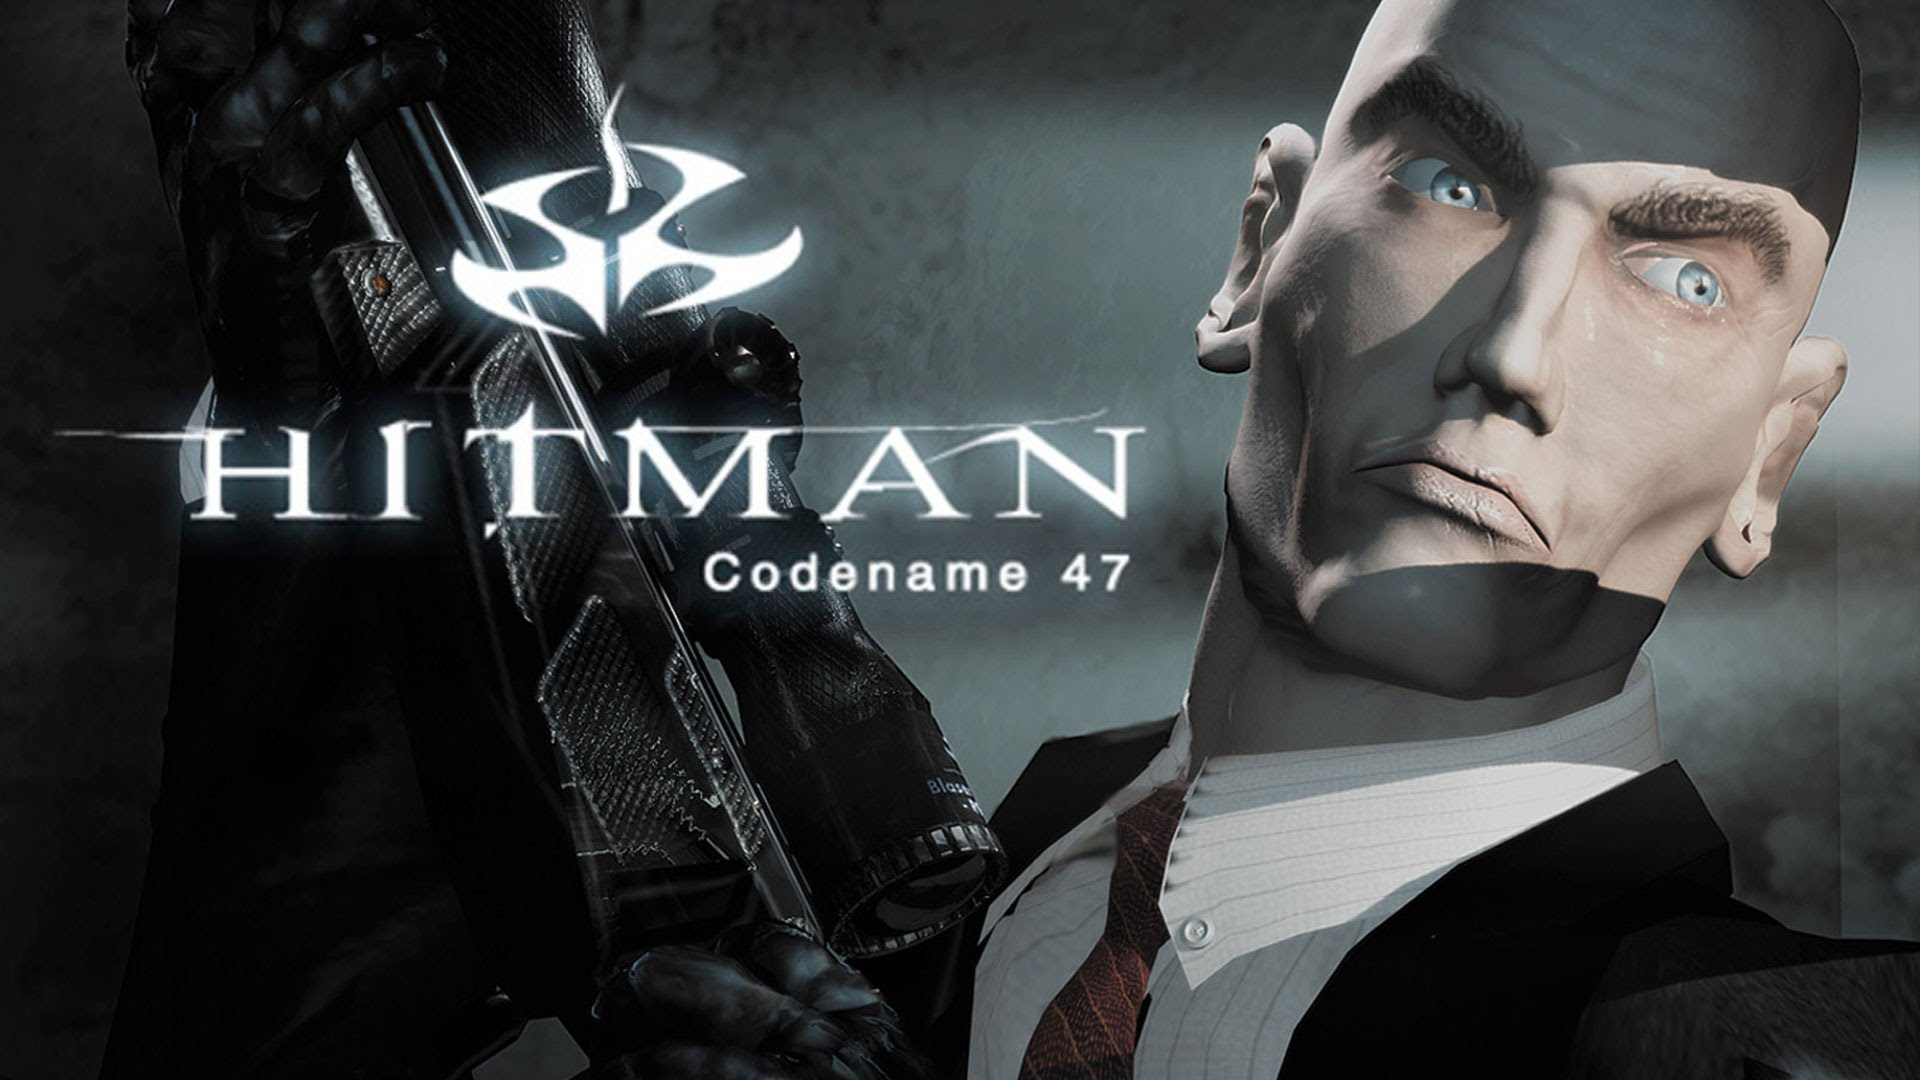 دانلود نسخه فشرده بازی Hitman Codename 47 با حجم 130 مگابایت